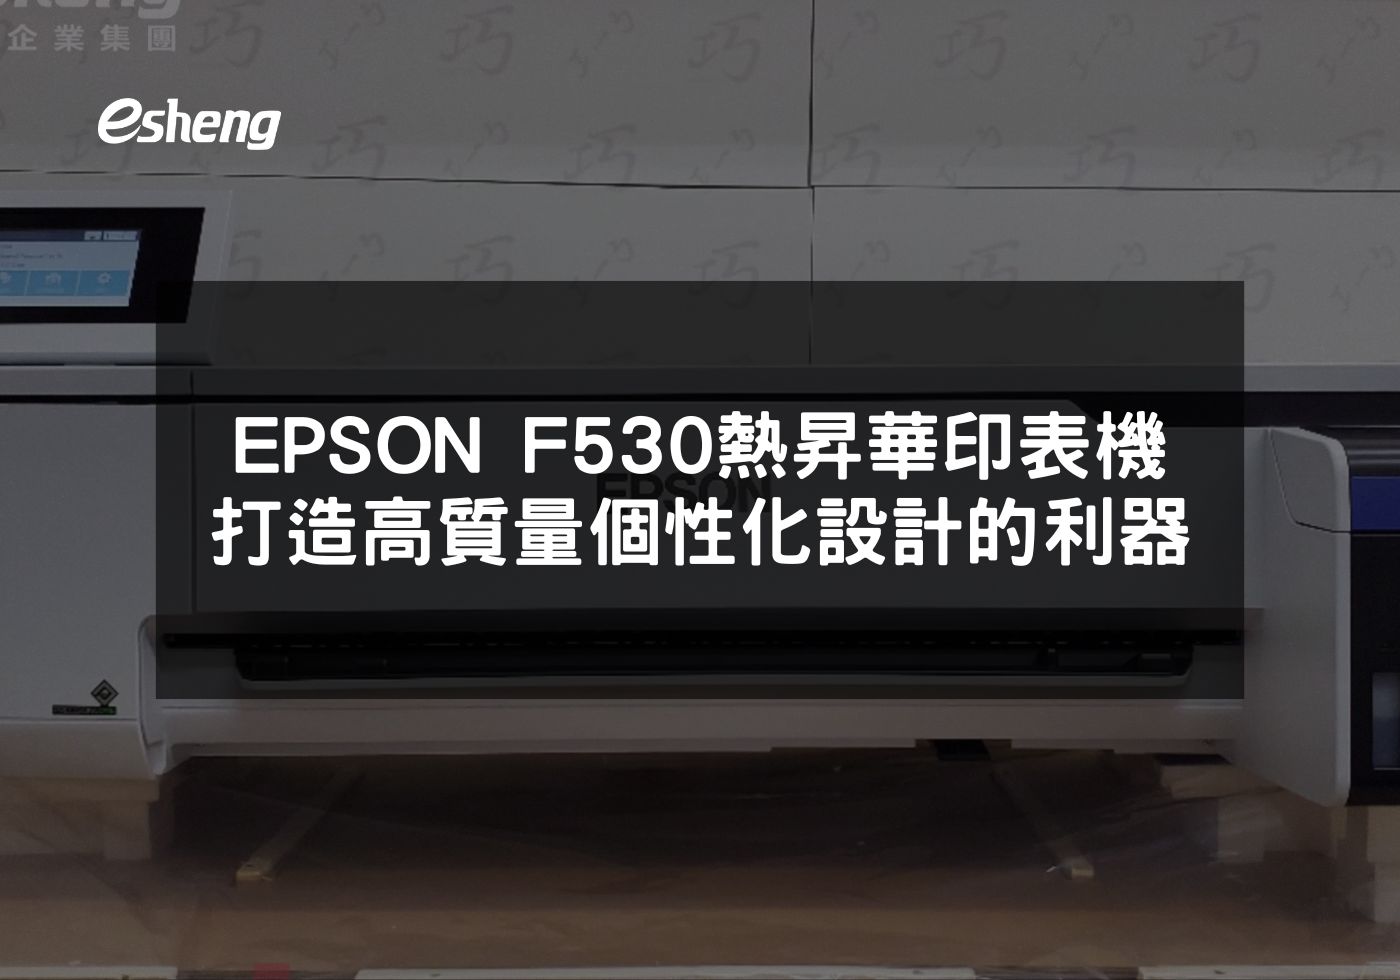 閱讀更多文章 EPSON F530熱昇華印表機 打造高質量個性化設計的利器